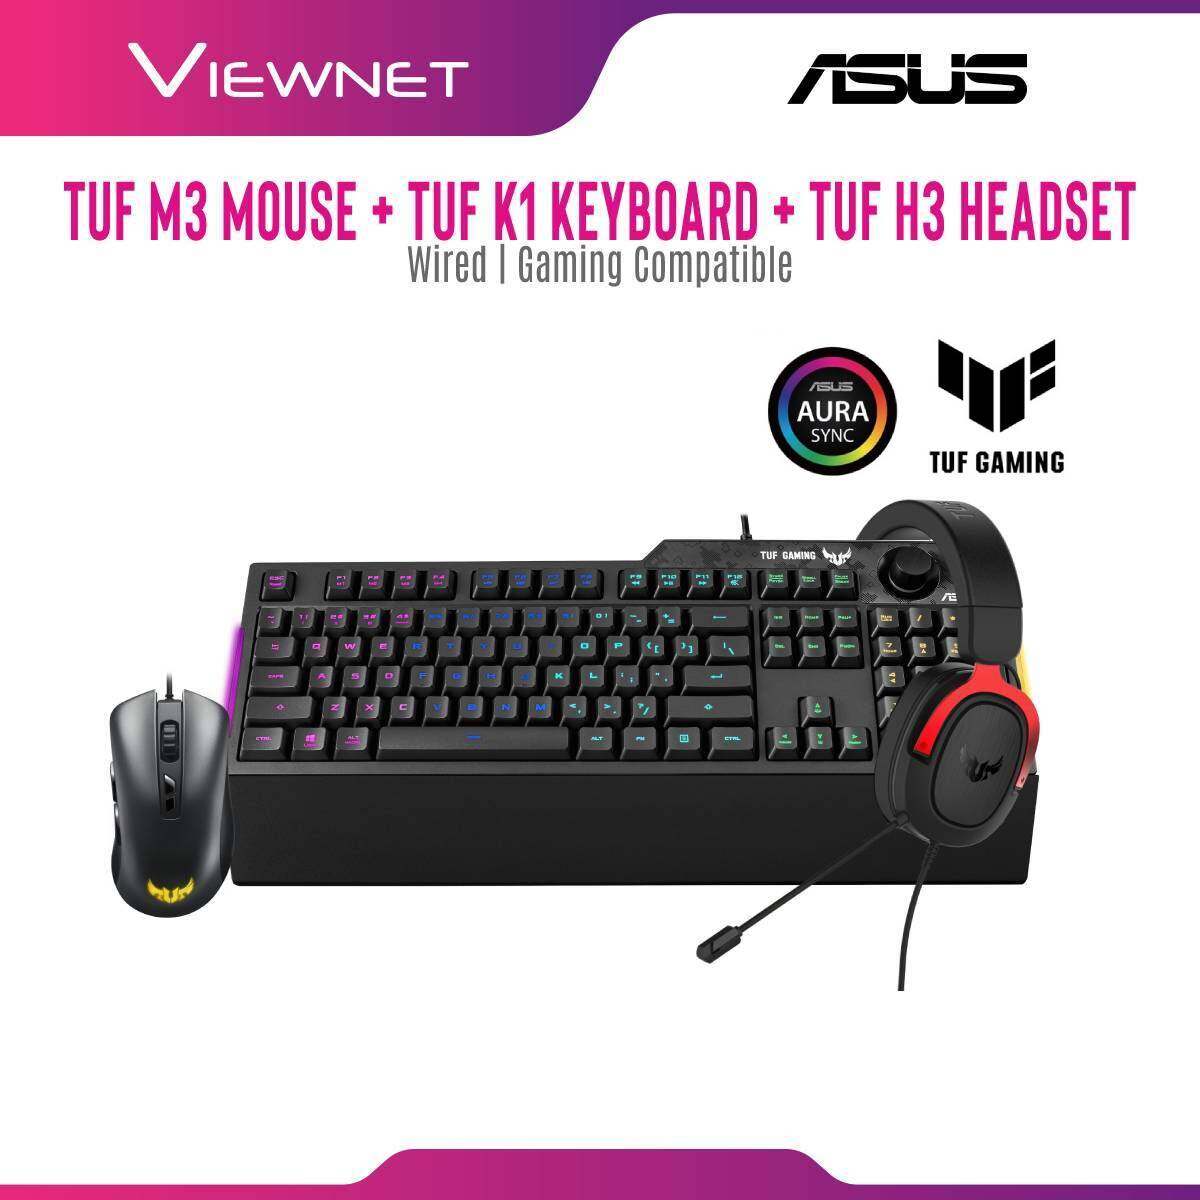 Asus Tuf M3 Wired Gaming Mouse + Asus Tuf K1 Wired Gaming Keyboard + Asus H3 (Silver) / (Red) / (Gun Metal) Gaming Headset